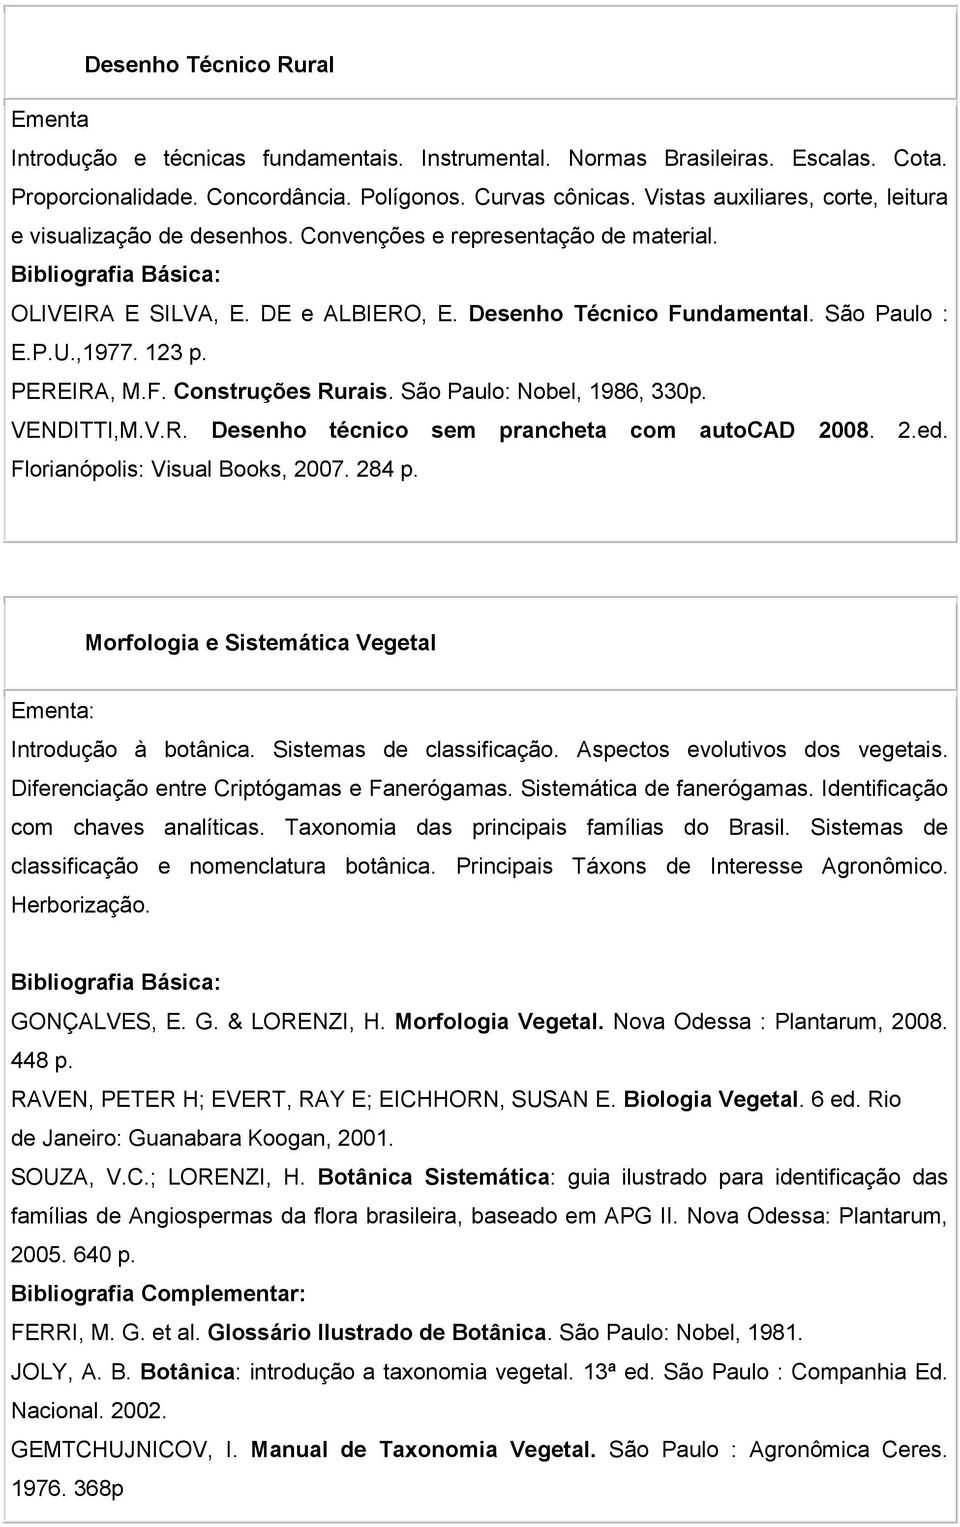 PEREIRA, M.F. Construções Rurais. São Paulo: Nobel, 1986, 330p. VENDITTI,M.V.R. Desenho técnico sem prancheta com autocad 2008. 2.ed. Florianópolis: Visual Books, 2007. 284 p.